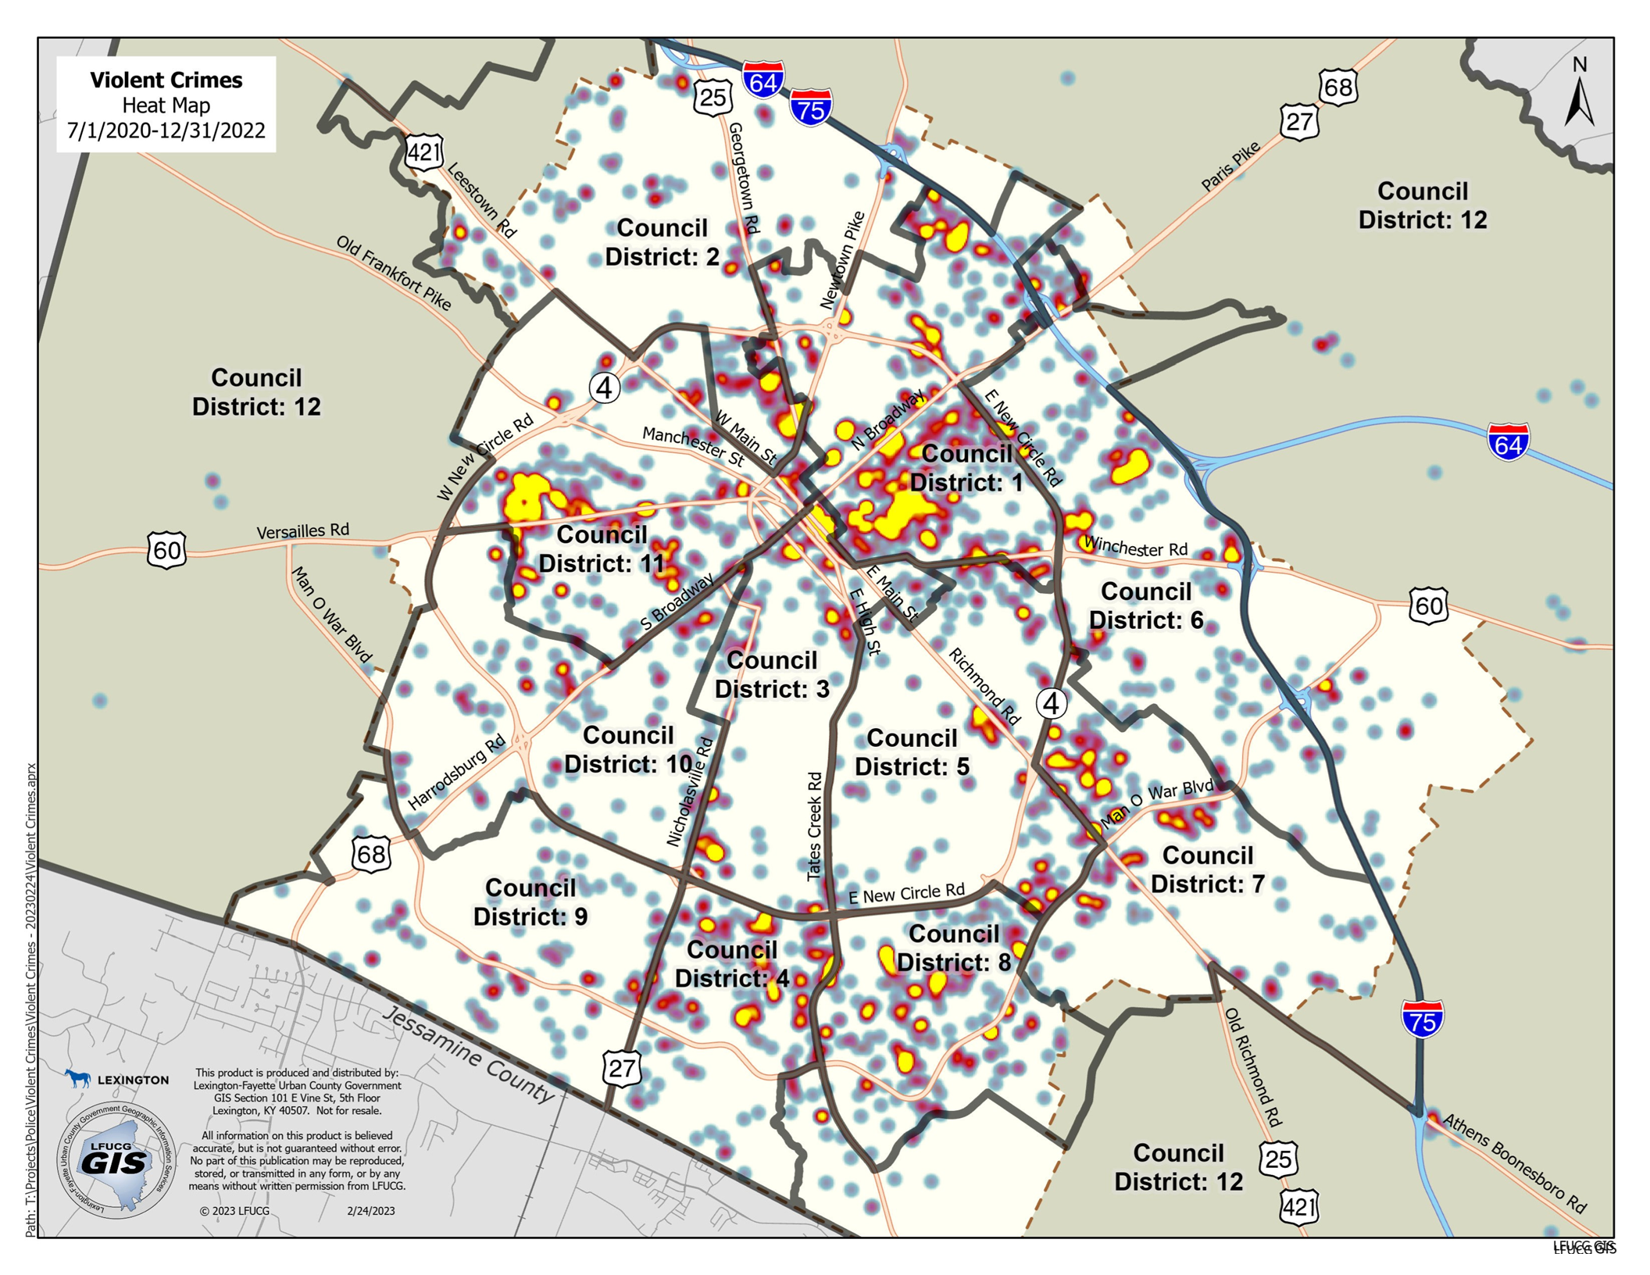 Violent Crime Heat Map by Council District